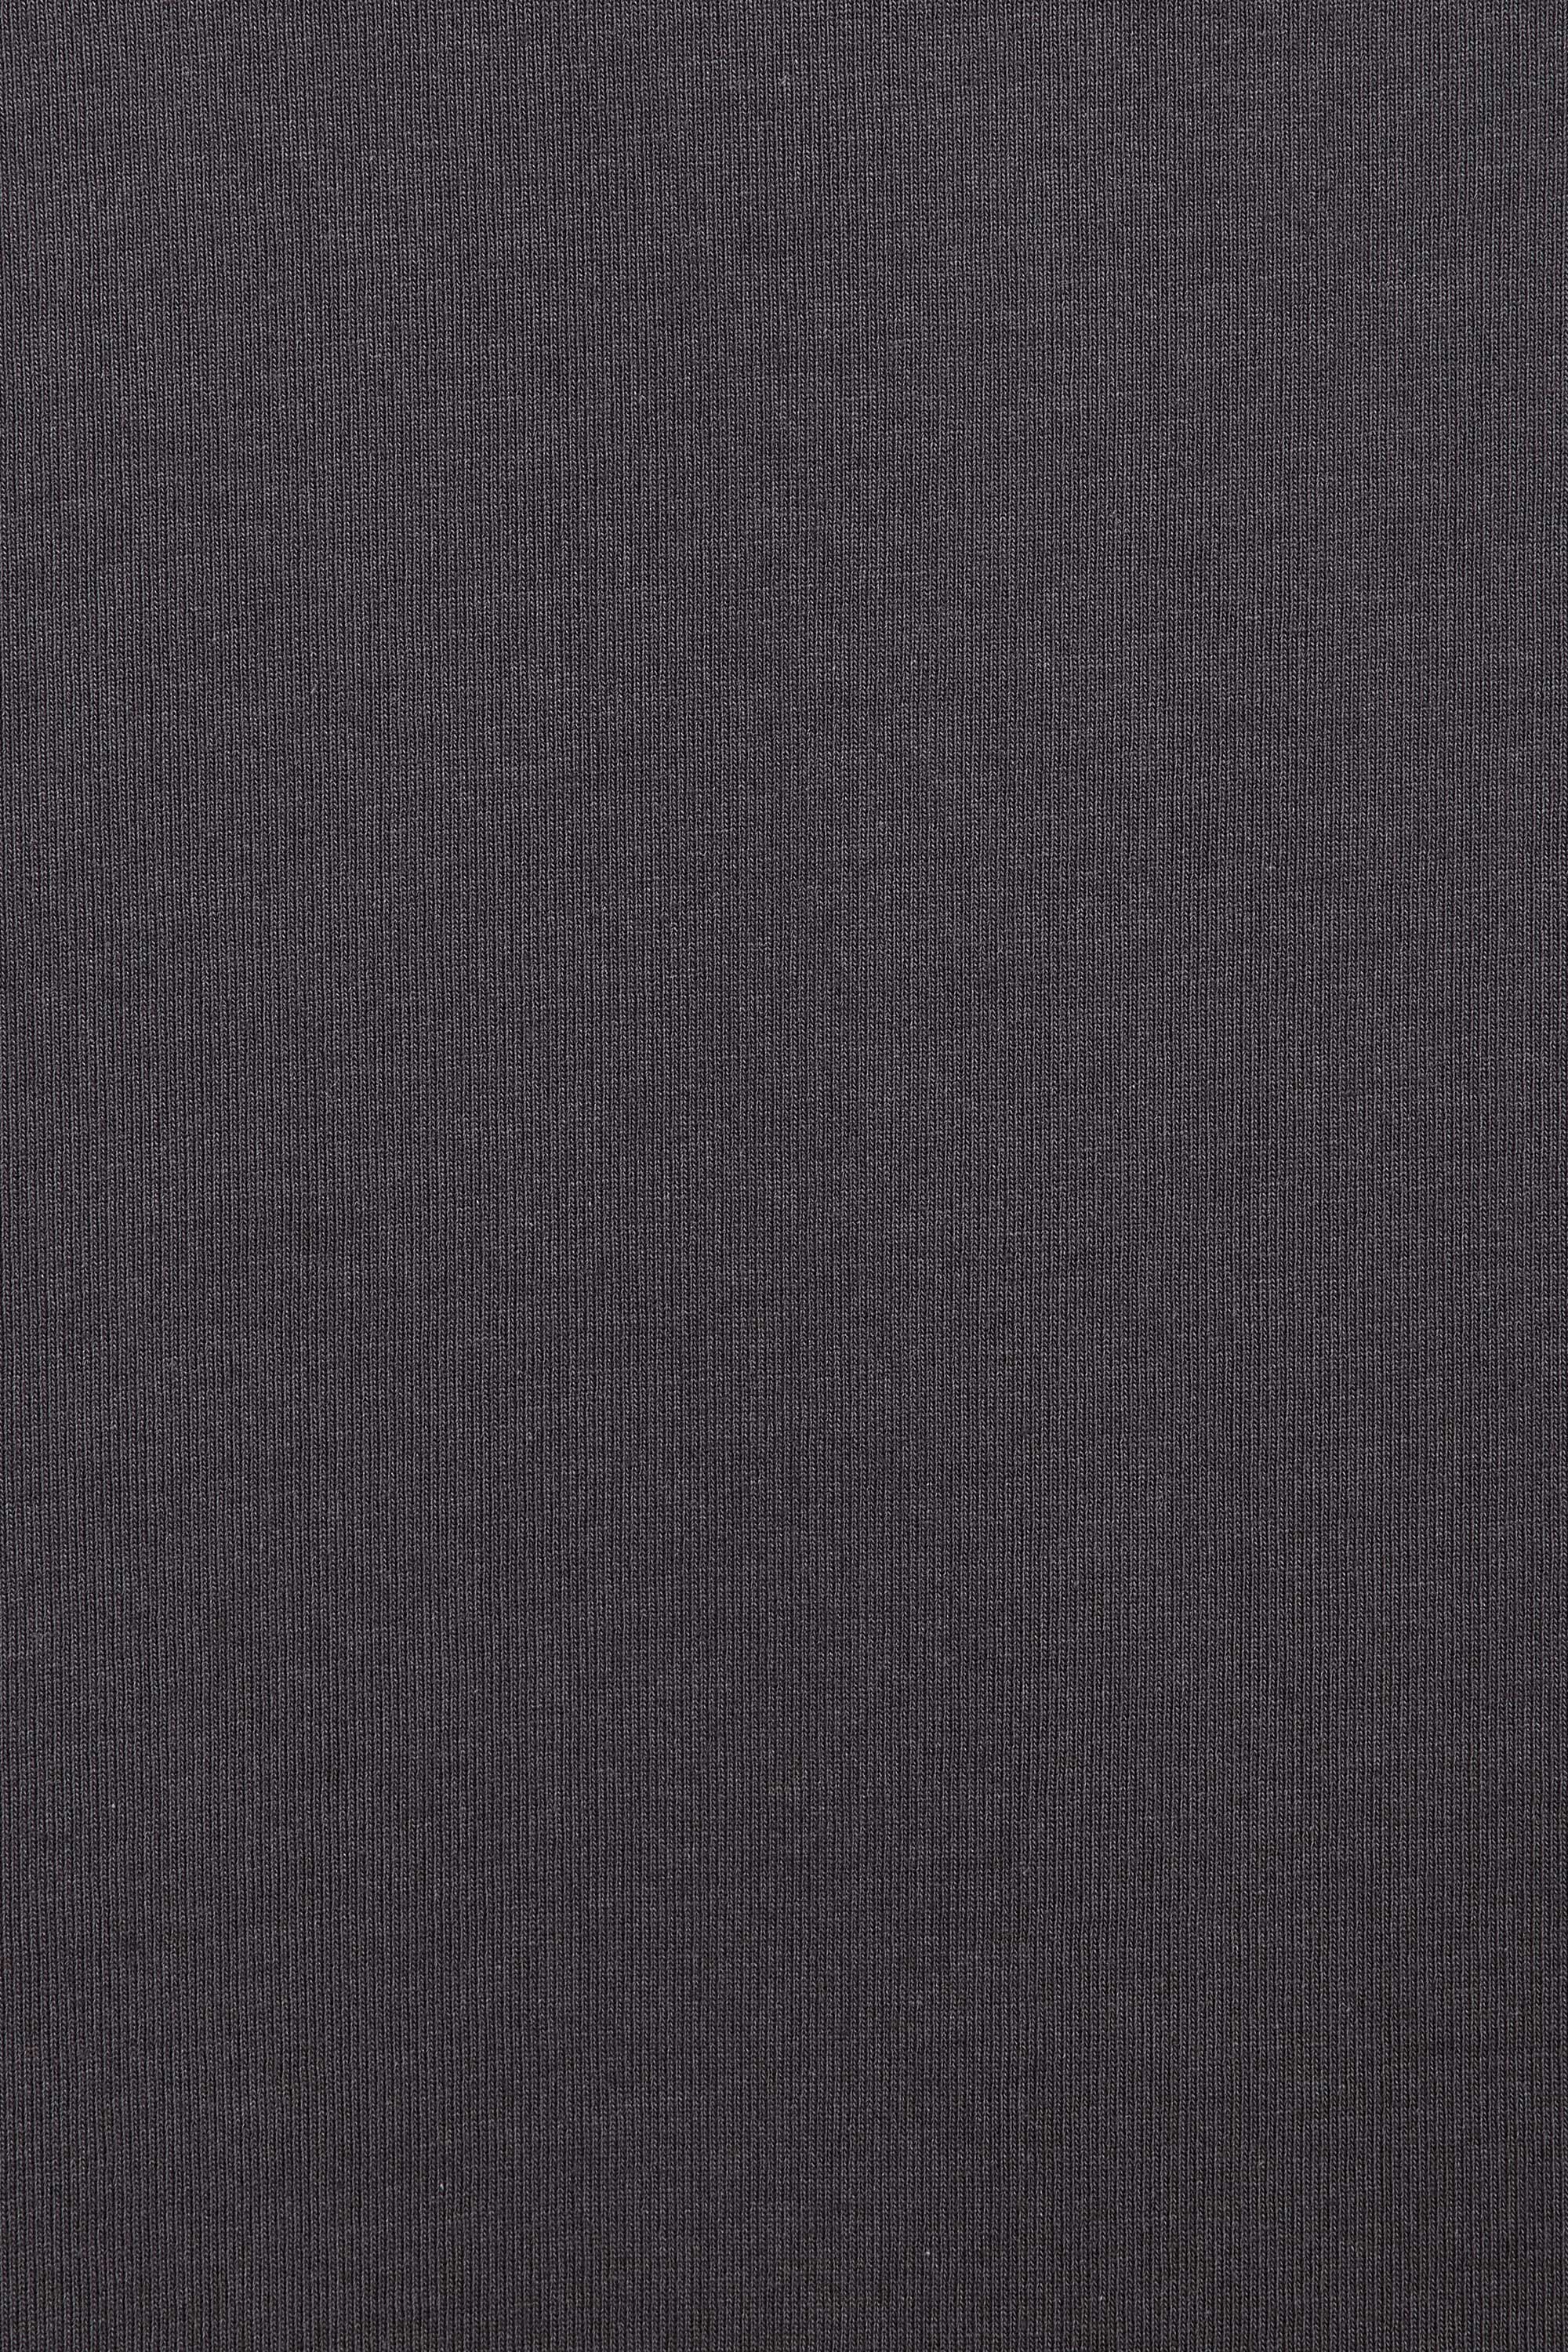 オーガニックコットン30/1引き揃えBD天竺ボーダー / バスクシャツ S/S, Charcoal